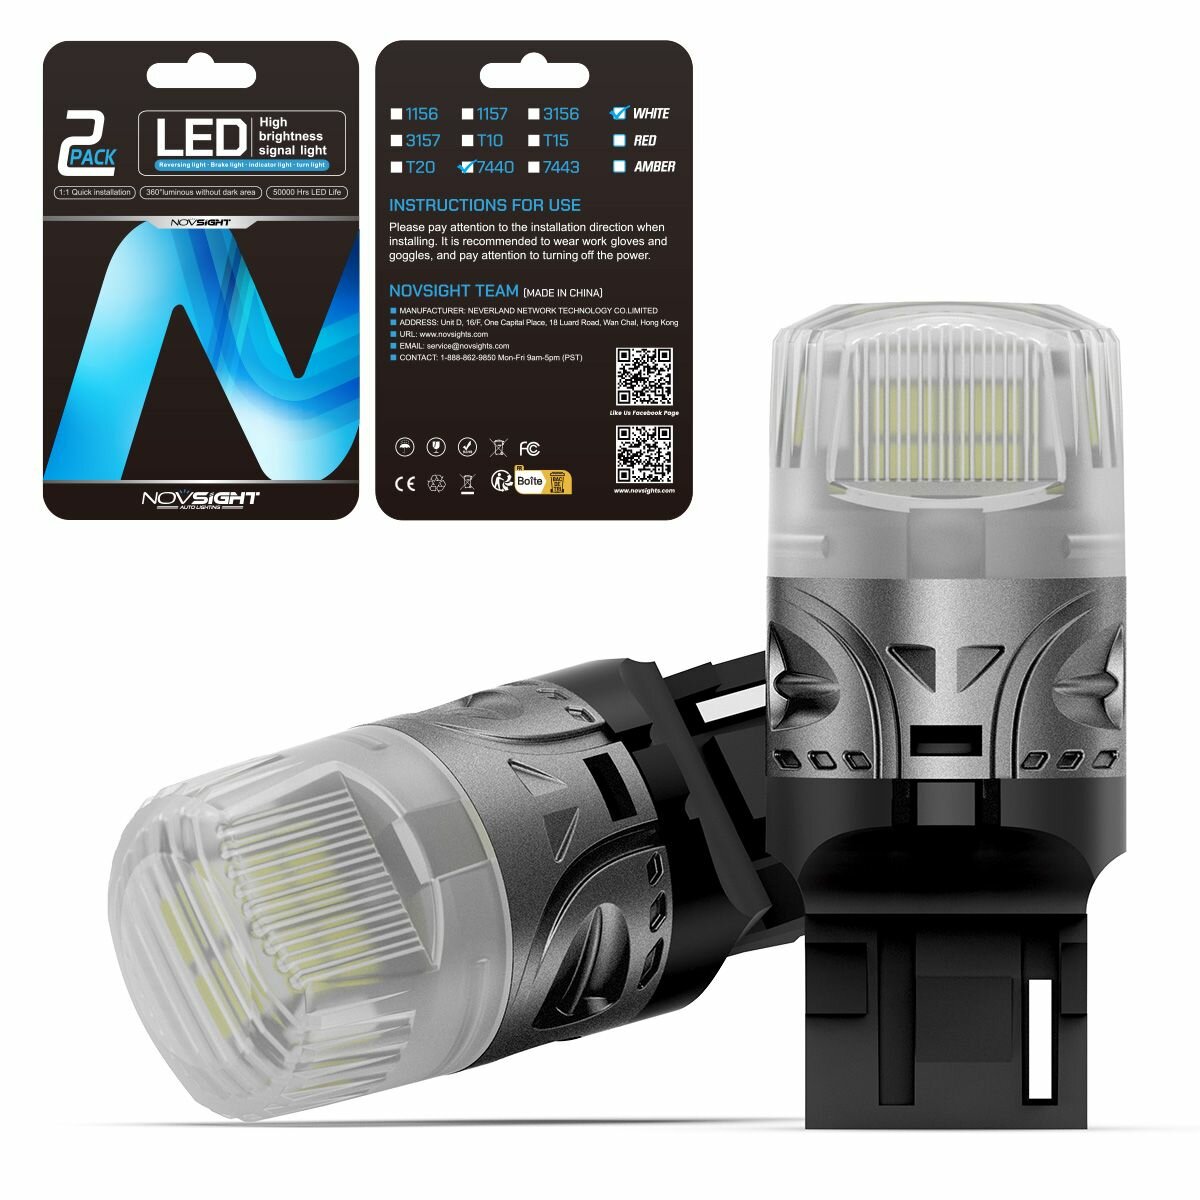 Светодиодная лампа Novsight SL9 цоколь T20 7440 W21W одноконтактная белый свет 2шт LED автомобильная